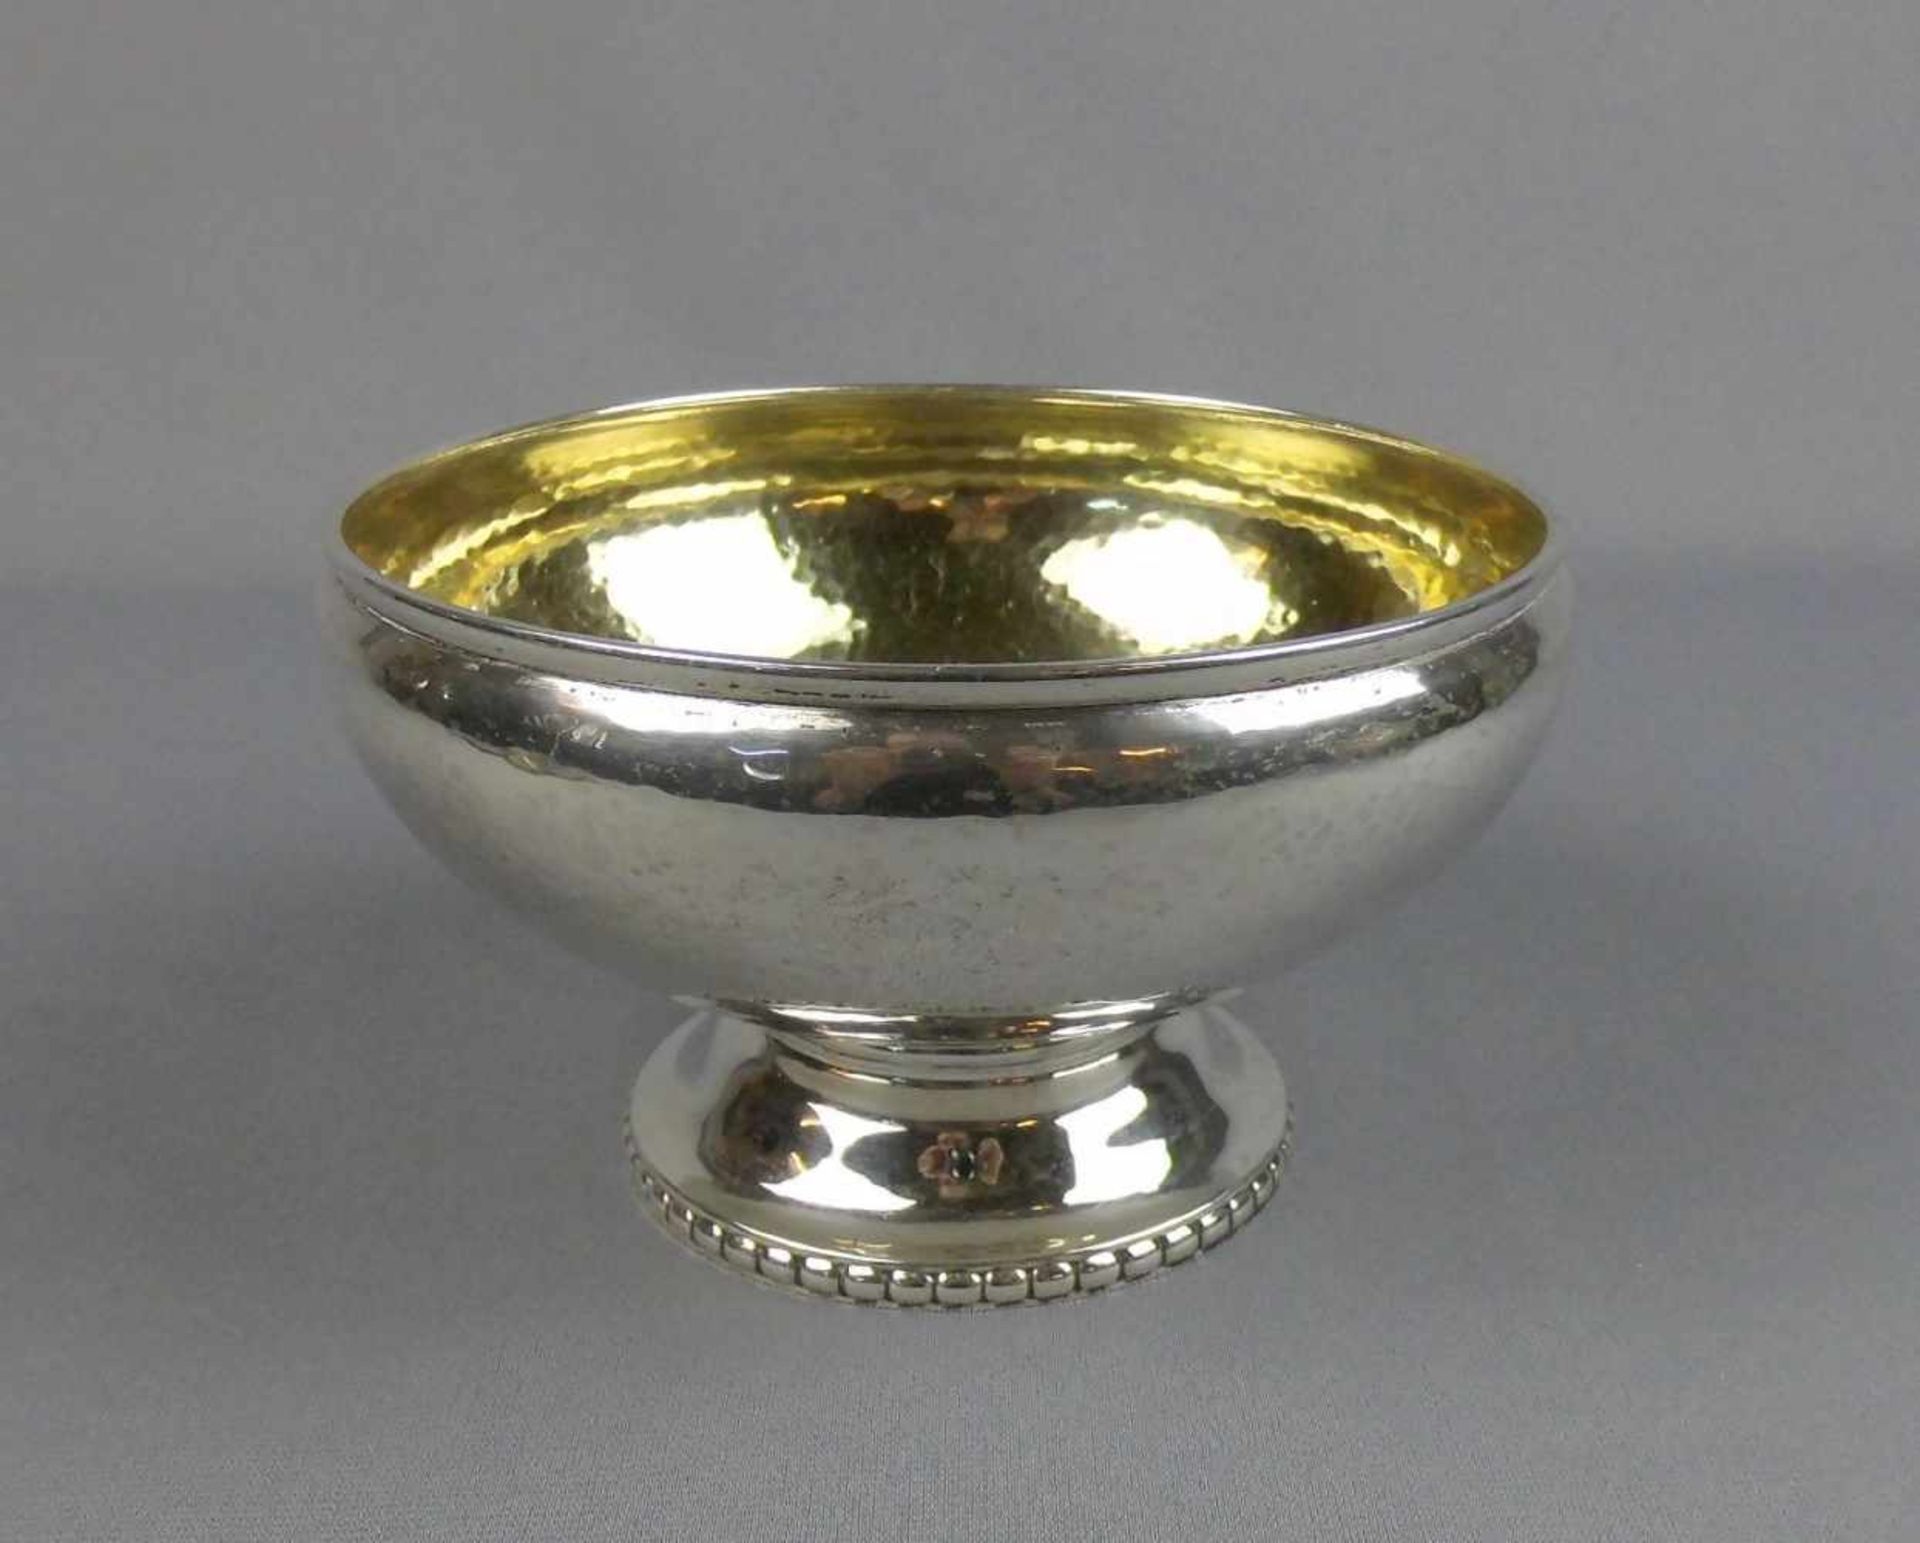 FUSSCHALE / silver bowl on a stand, 826er Silber (288 g), Kopenhagen, Dänemark, 1926, gepunzt mit "